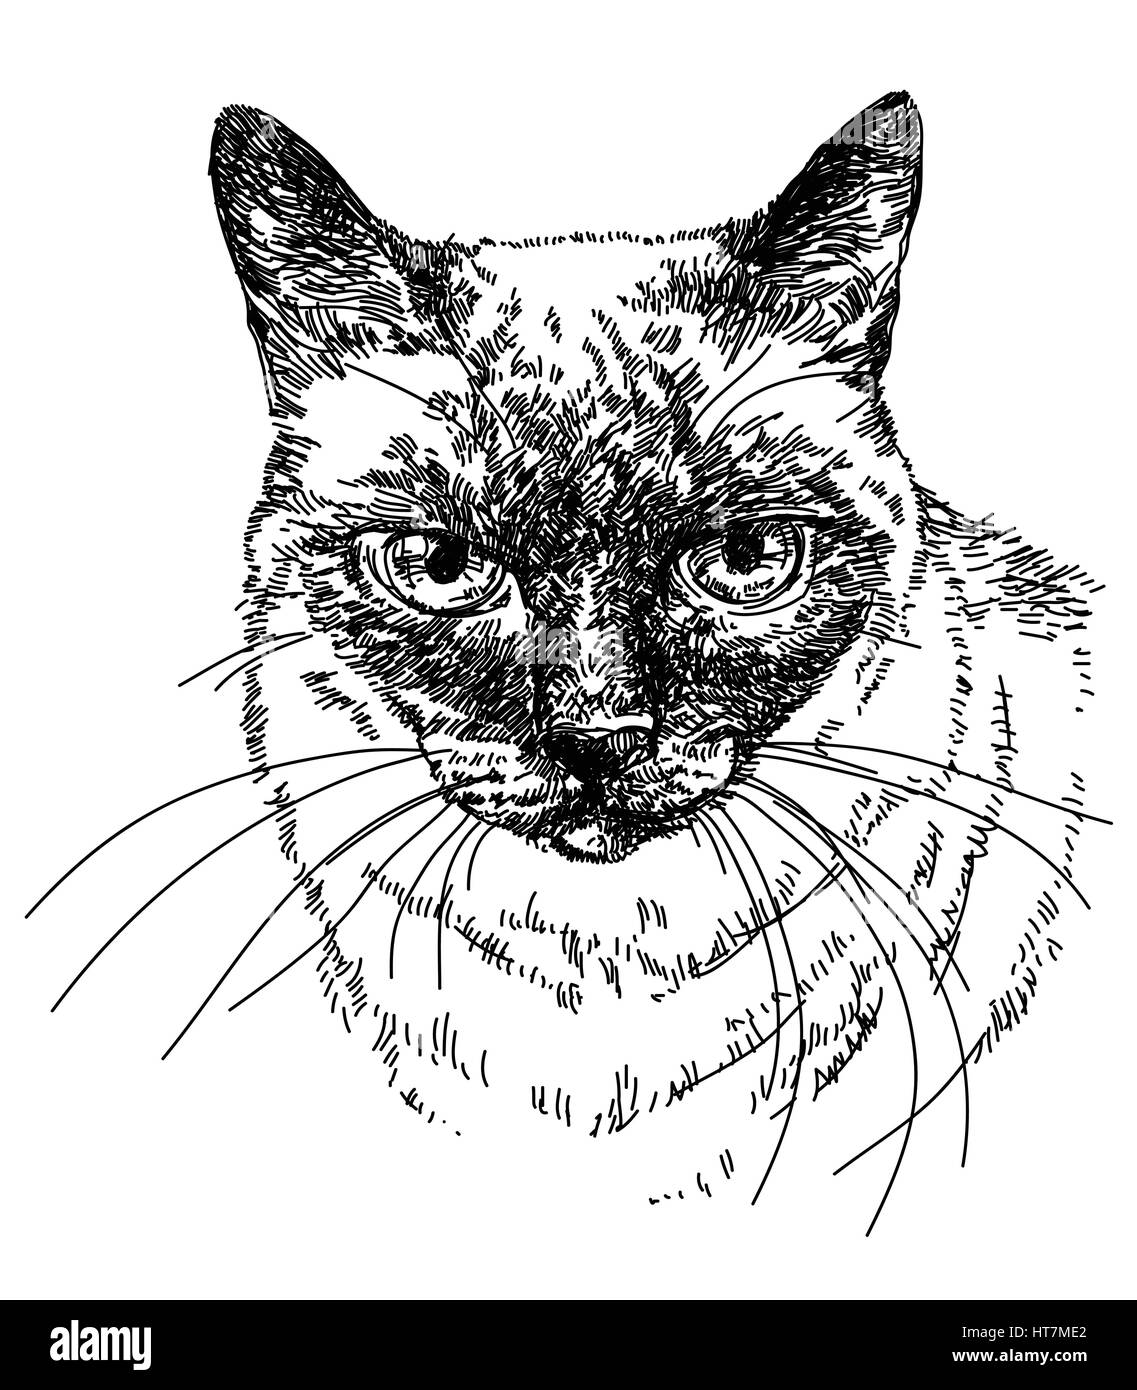 Siamesische Katze Kopf Vektor-Illustration der Handzeichnung Stock Vektor